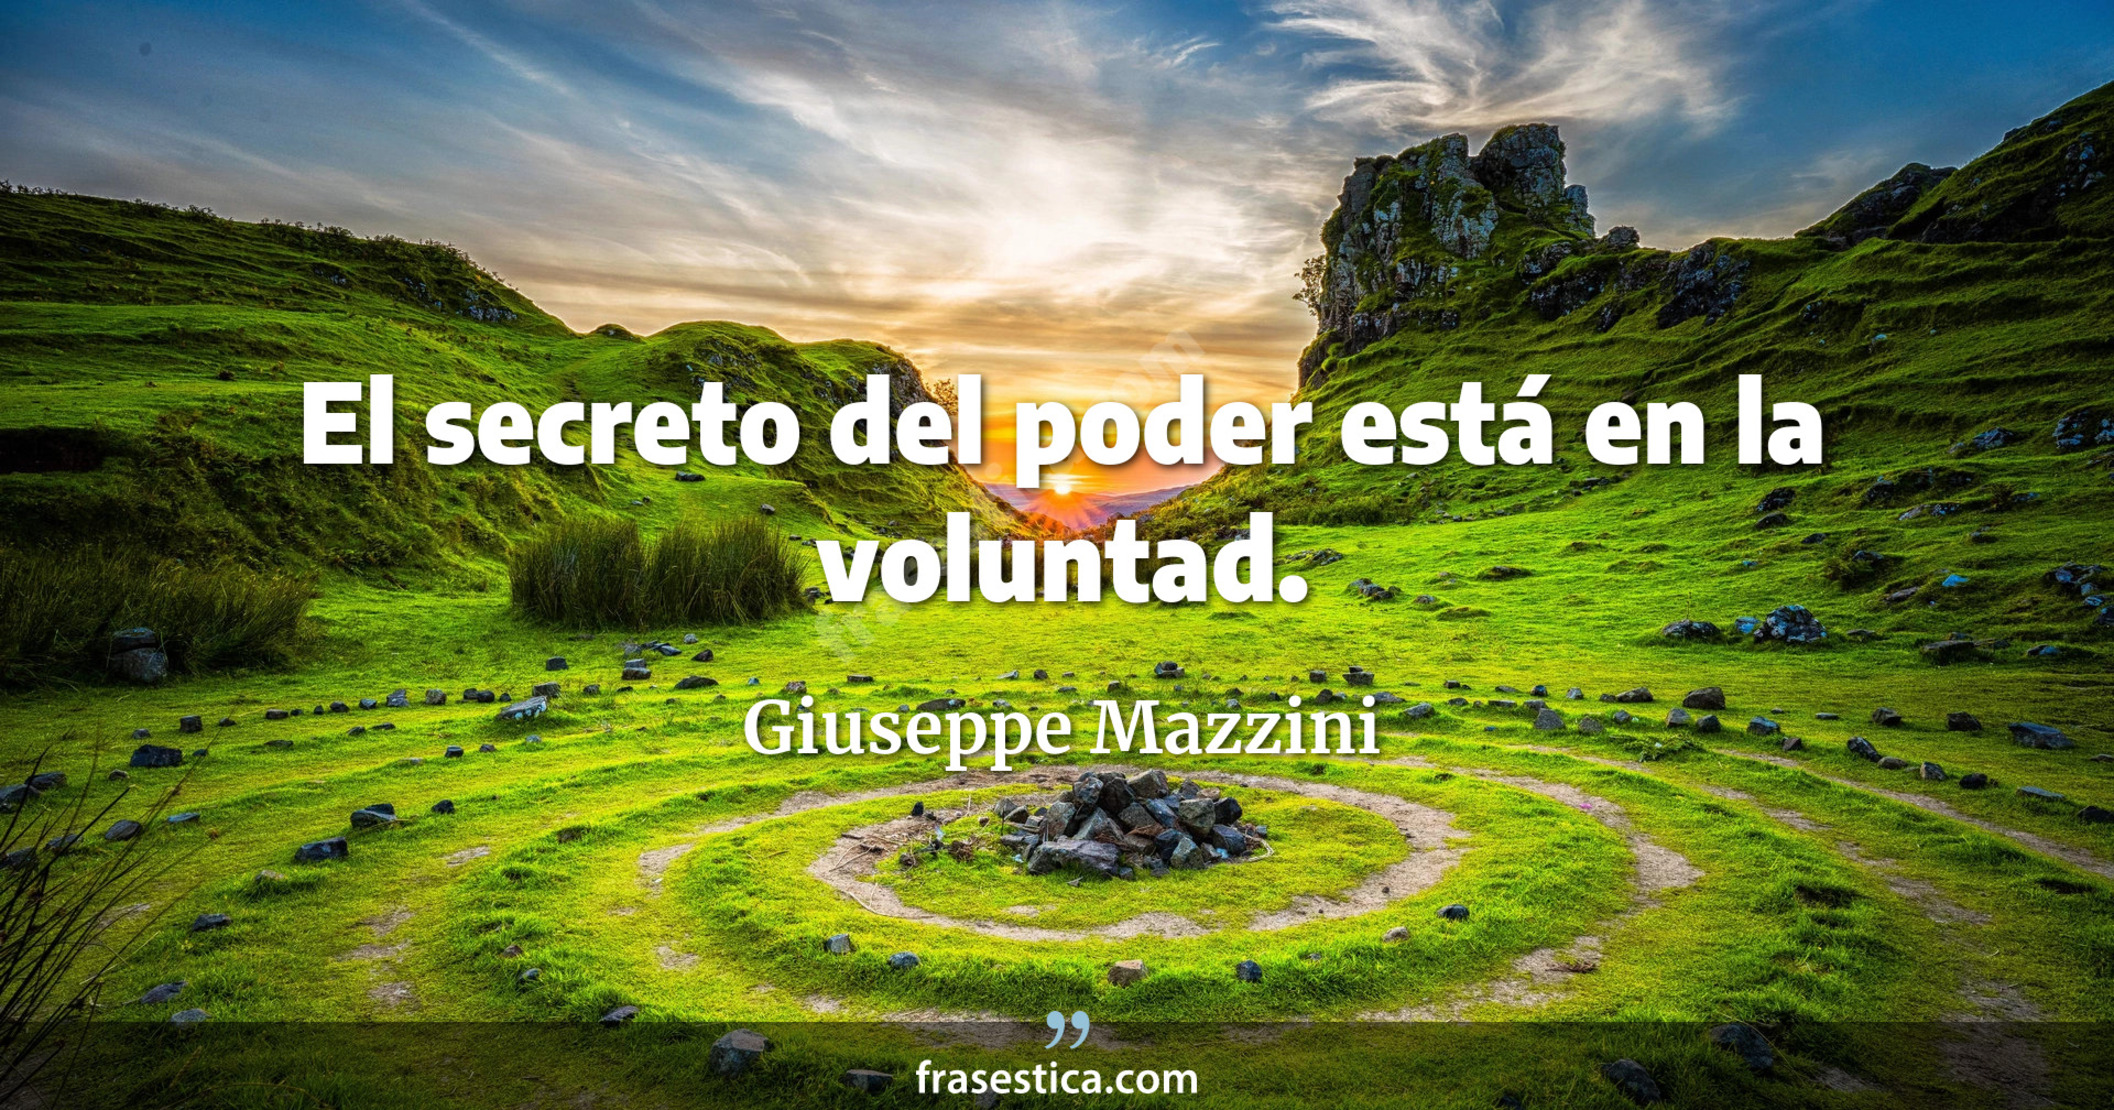 El secreto del poder está en la voluntad. - Giuseppe Mazzini